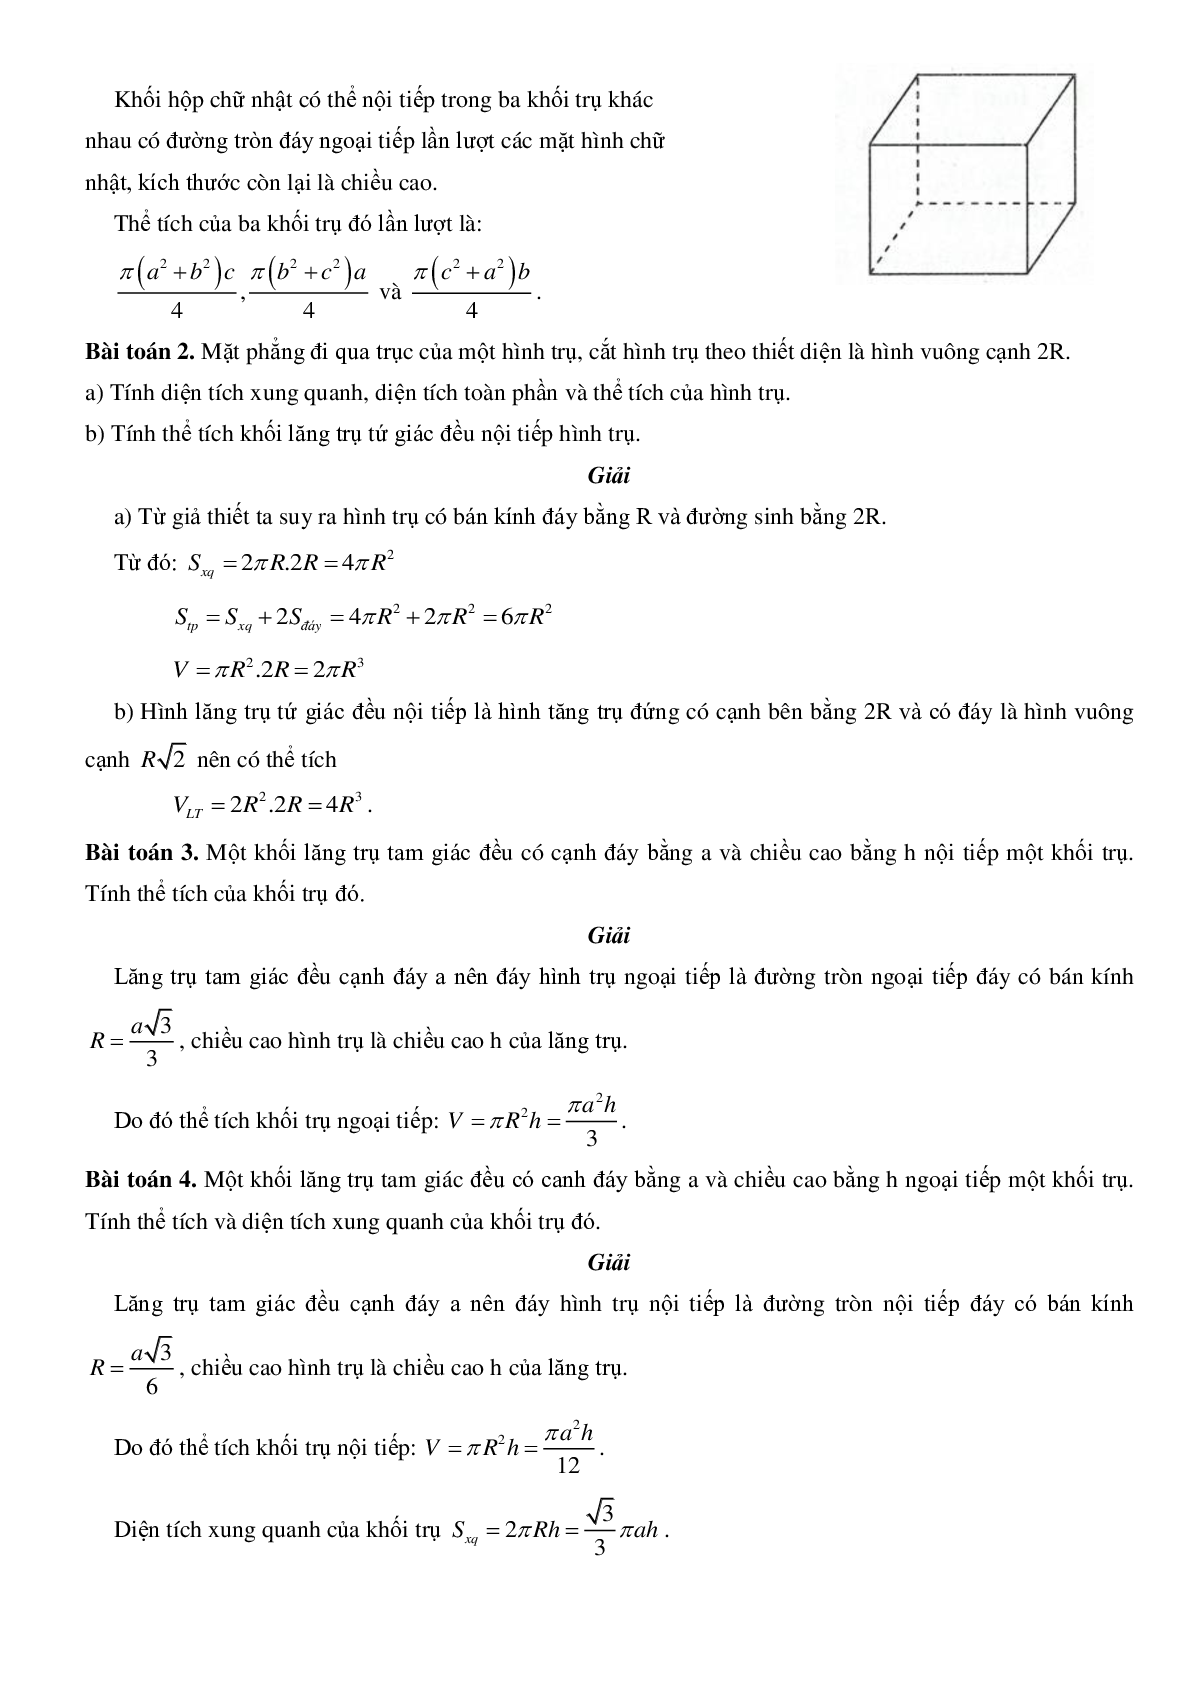 Mặt trụ - Hình trụ - Khối trụ - Ôn thi THPT QG môn toán (trang 5)